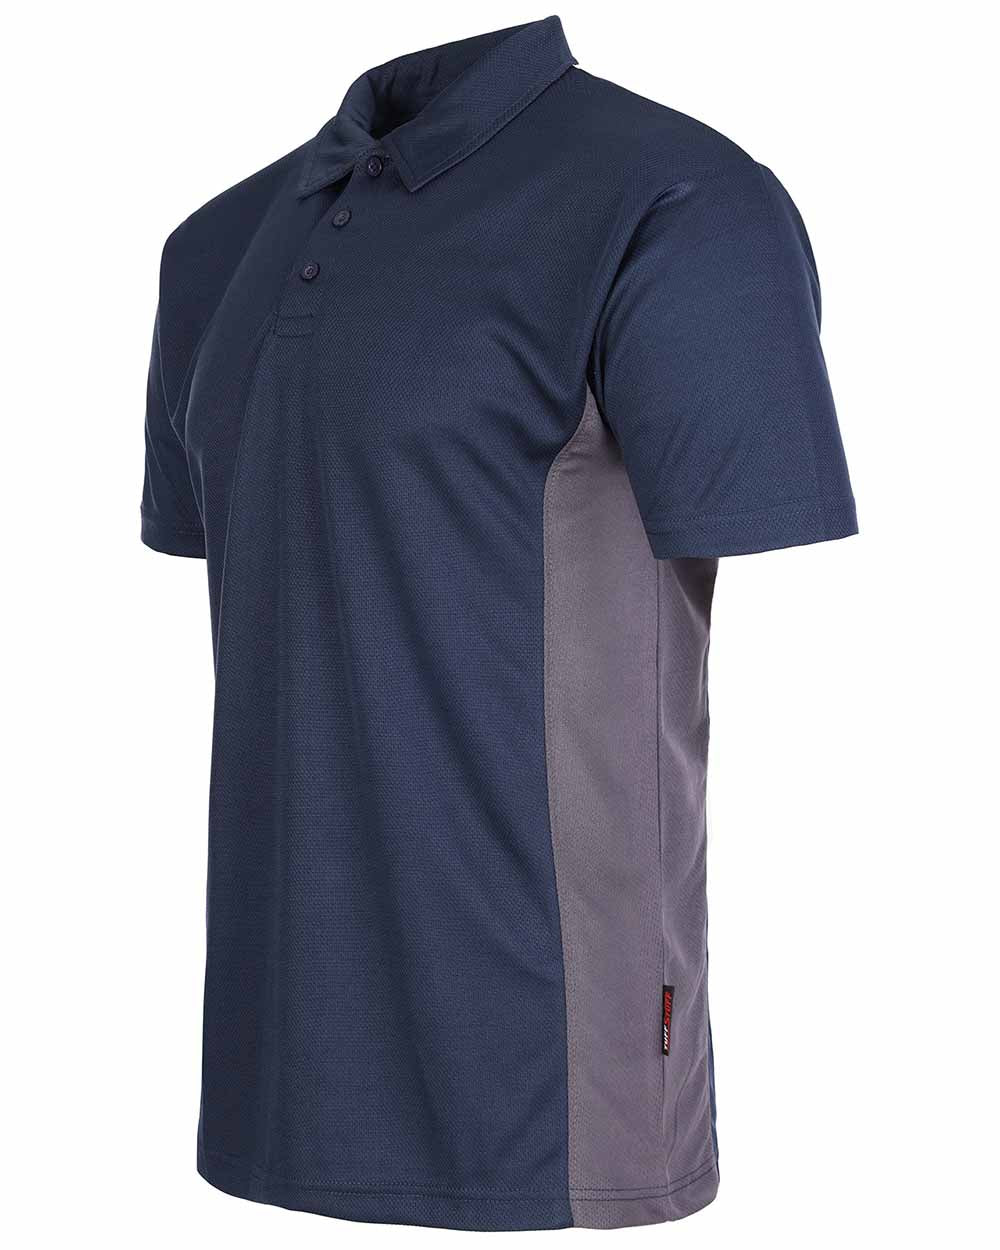 Navy Blue Coloured TuffStuff Elite Polo Shirt On A White Background 